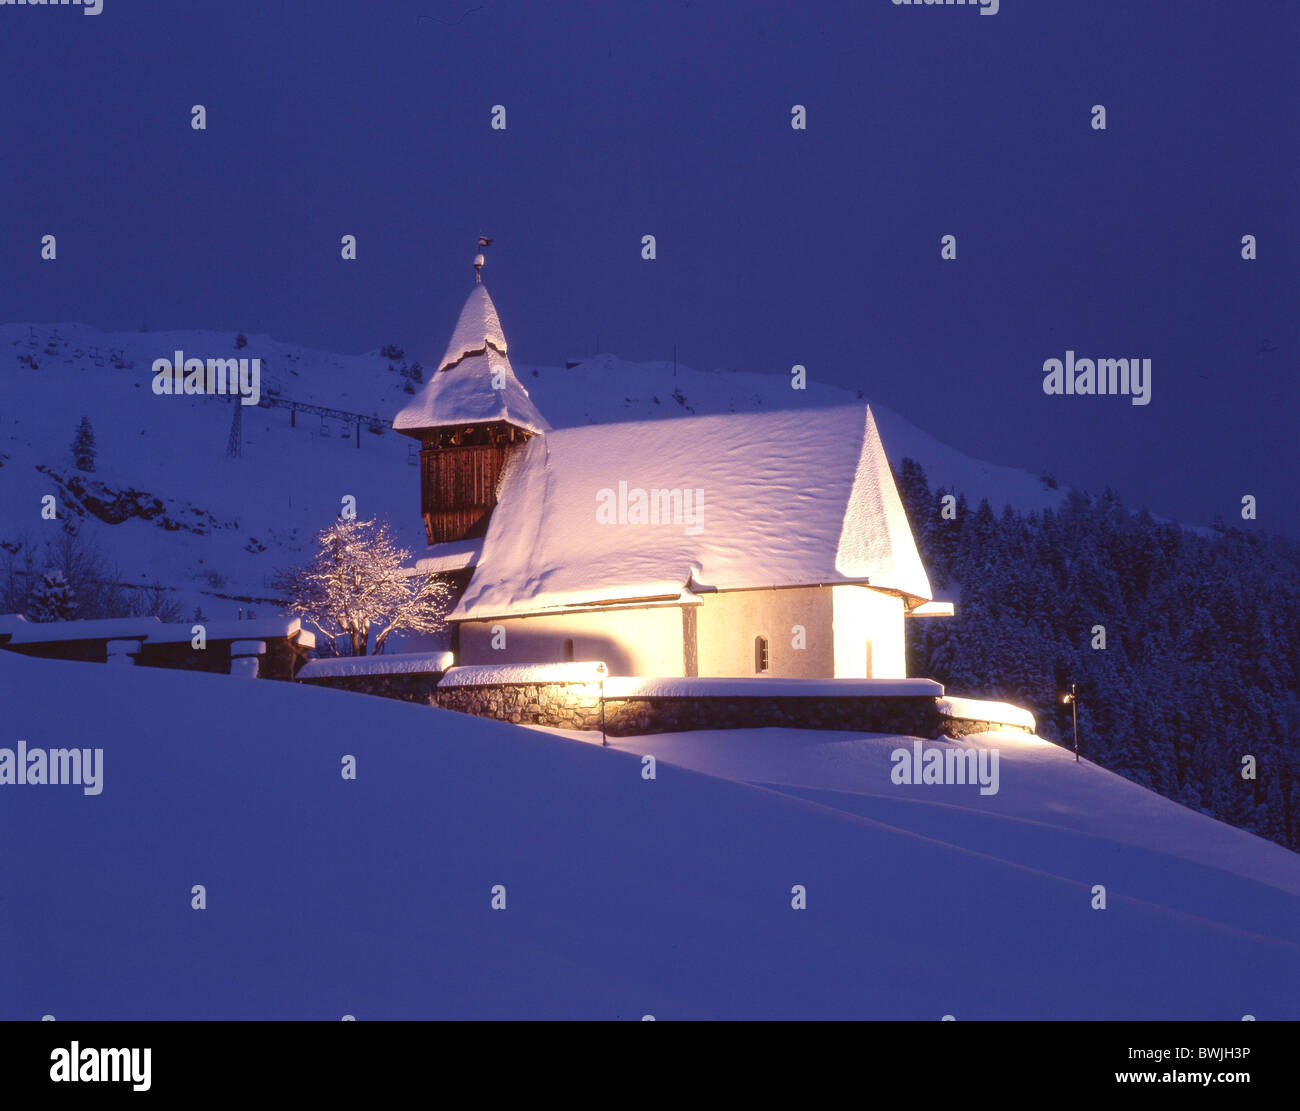 Inverno montagna Arosa chiesa cappella di montagna cappella di notte illuminata di notte snowbound coperte di neve snowy Foto Stock